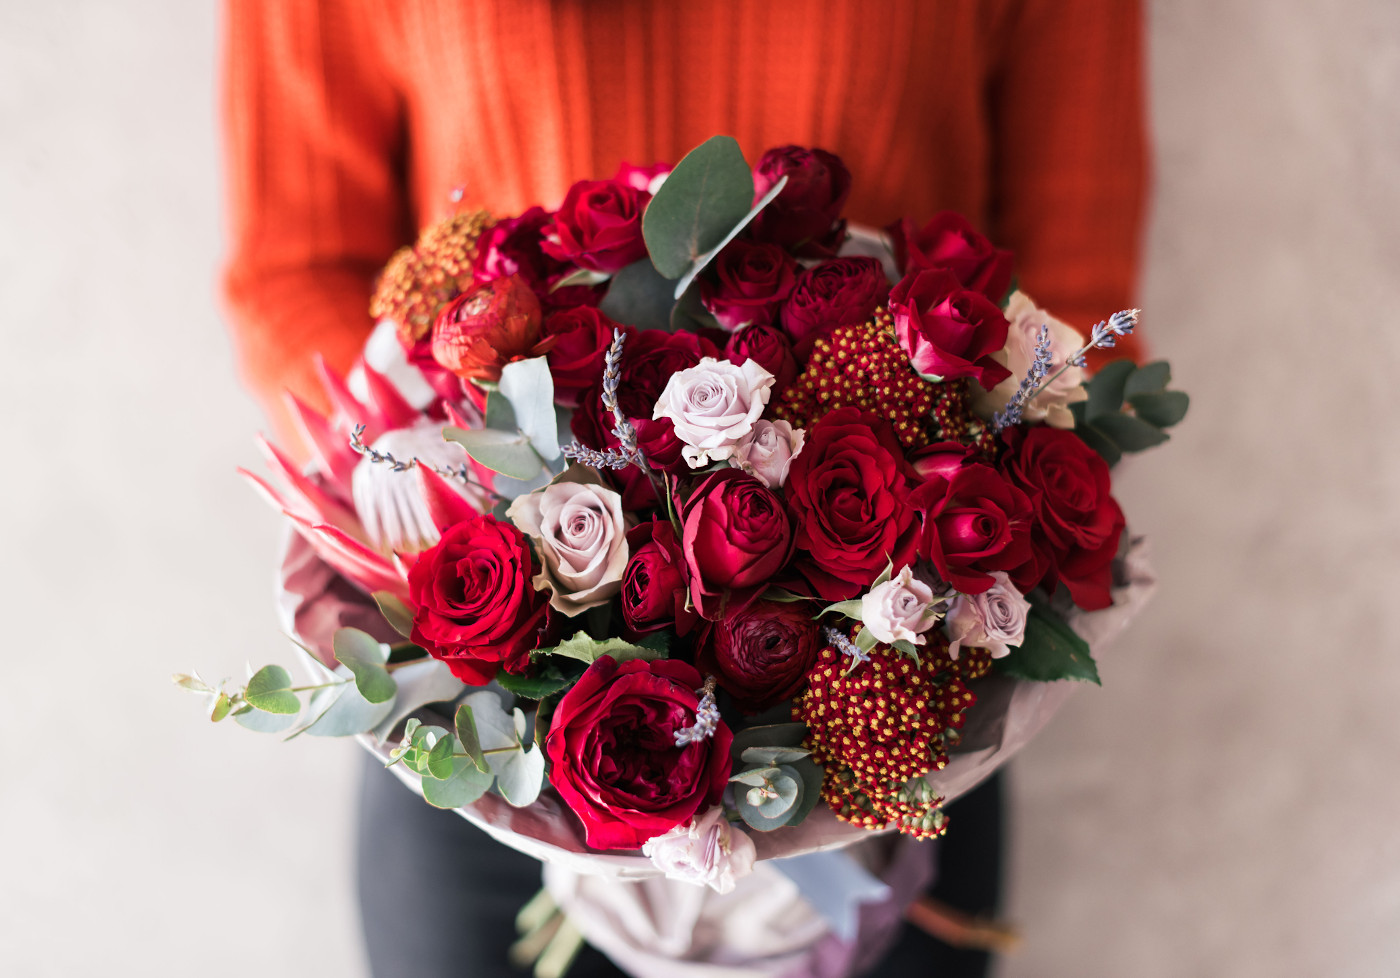 Mit Blumenbestellungen zum Valentinstag Meilen und Punkte sammeln